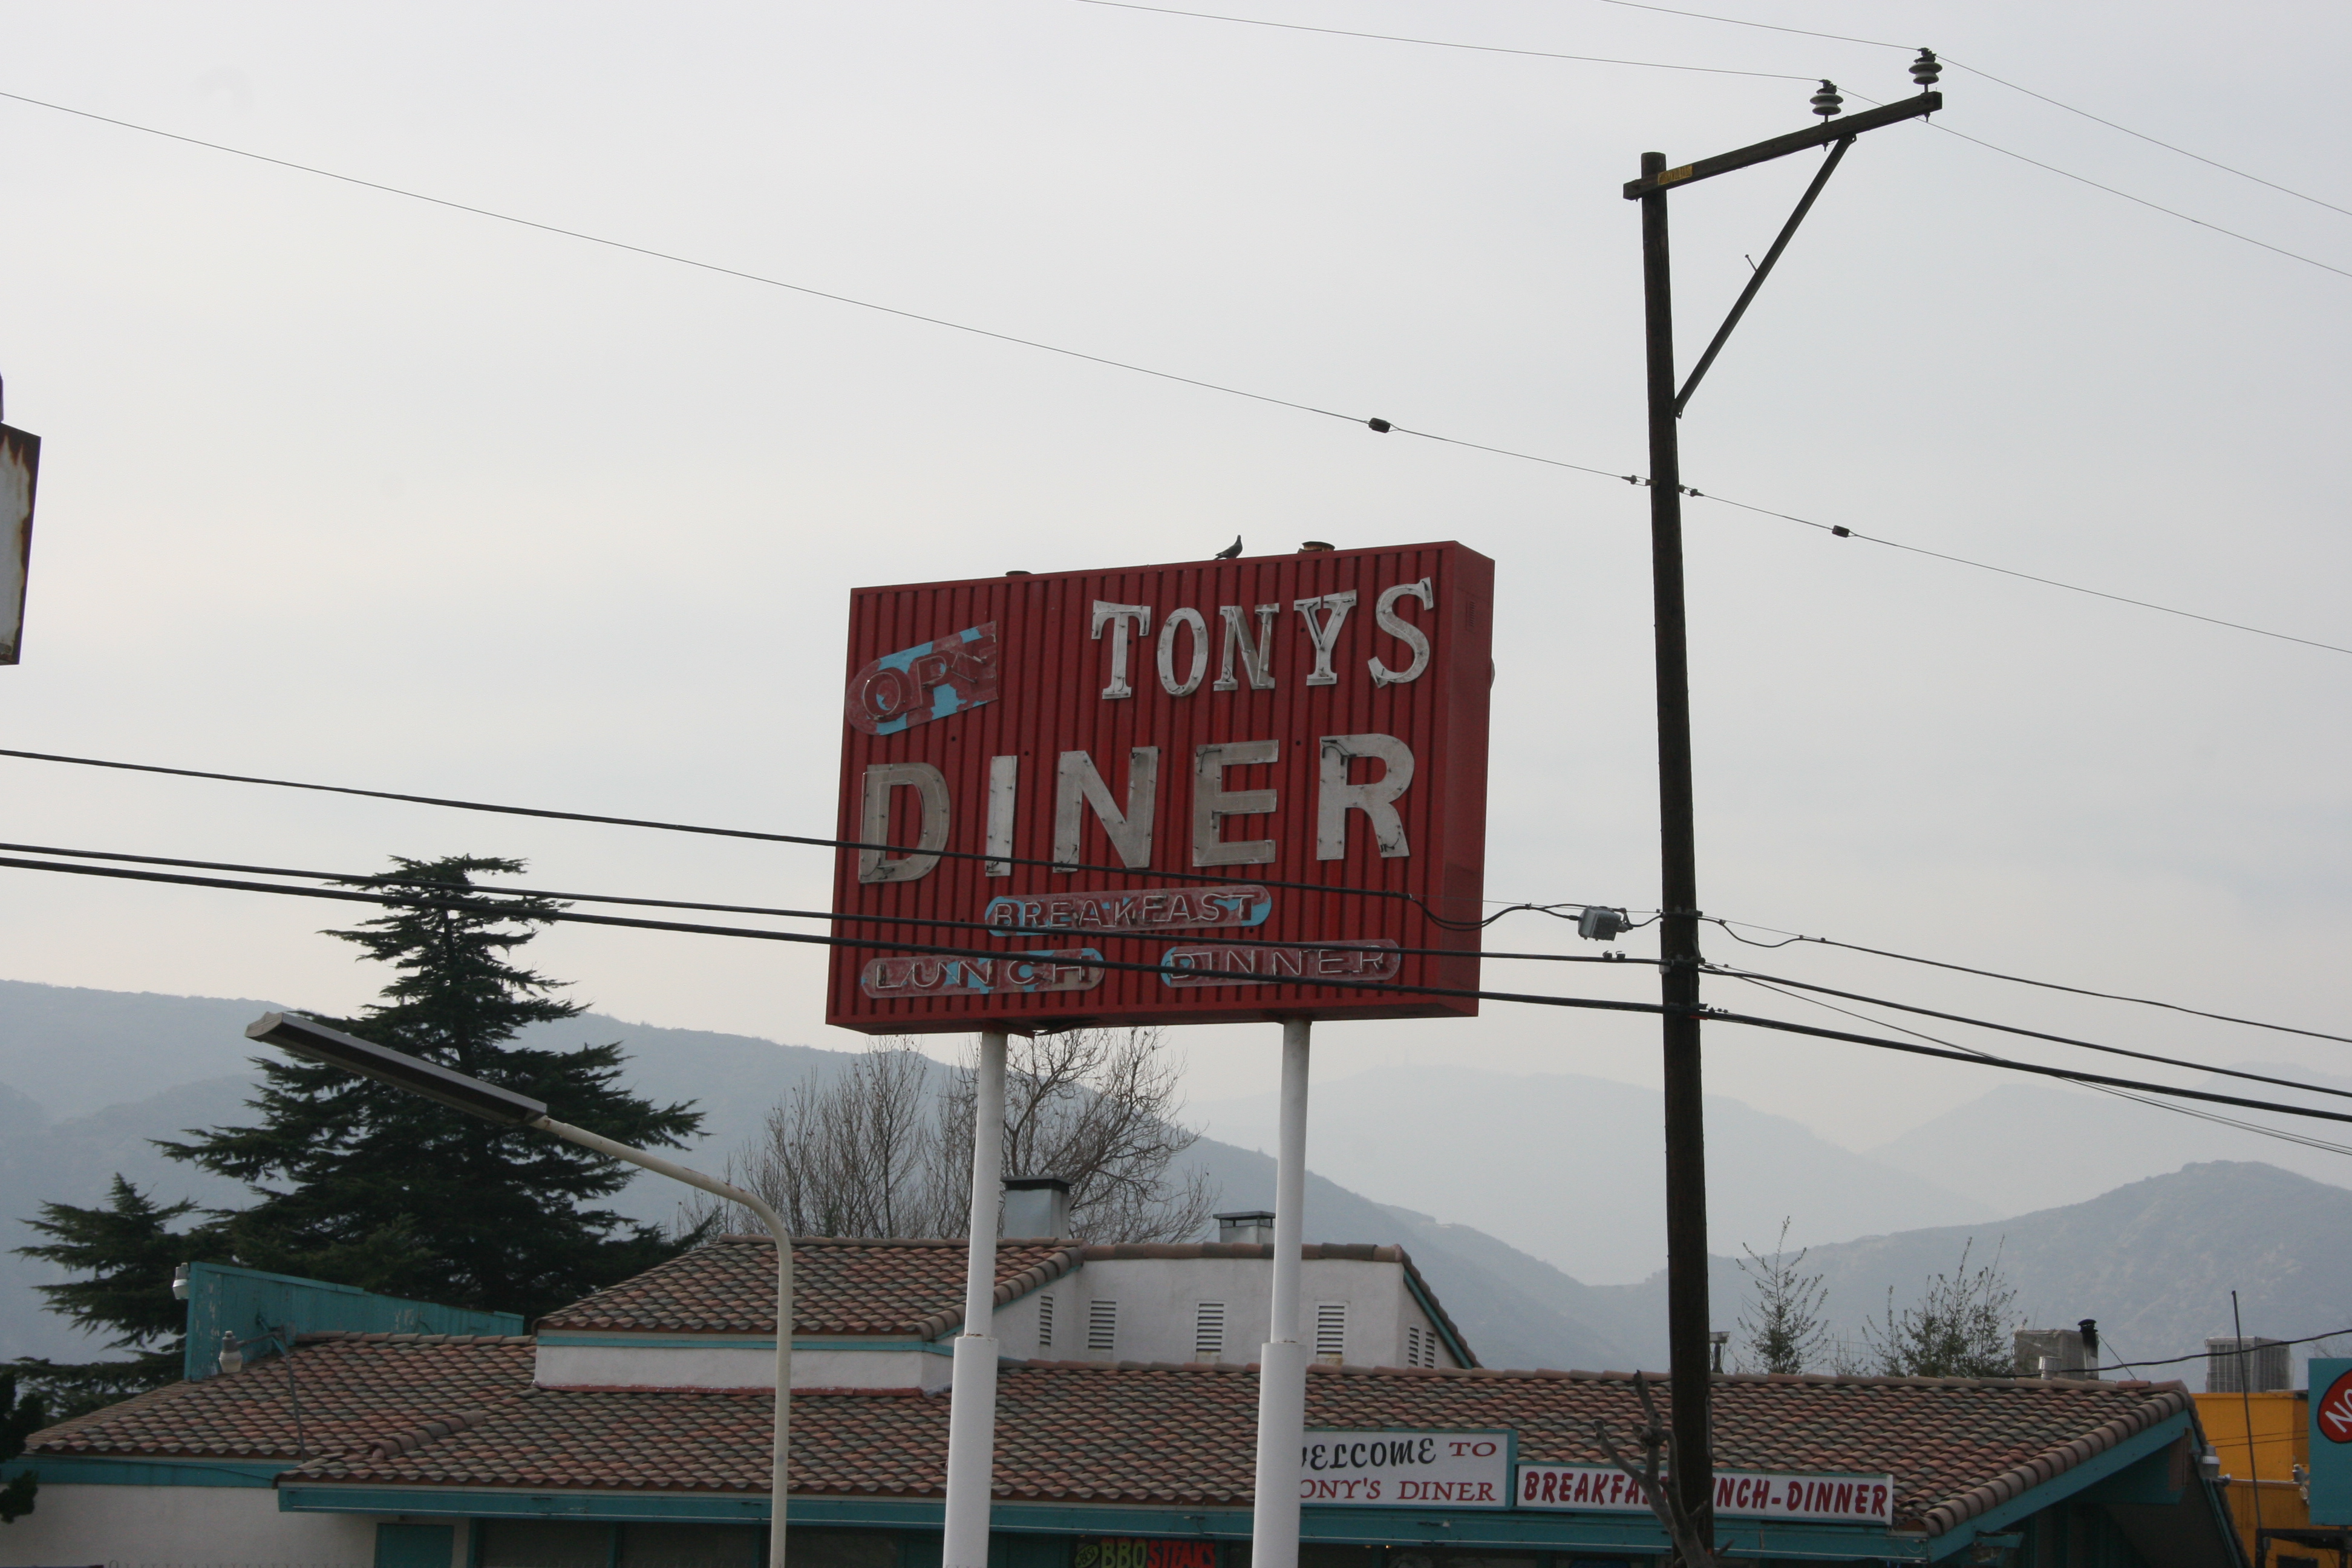 Tony's Diner